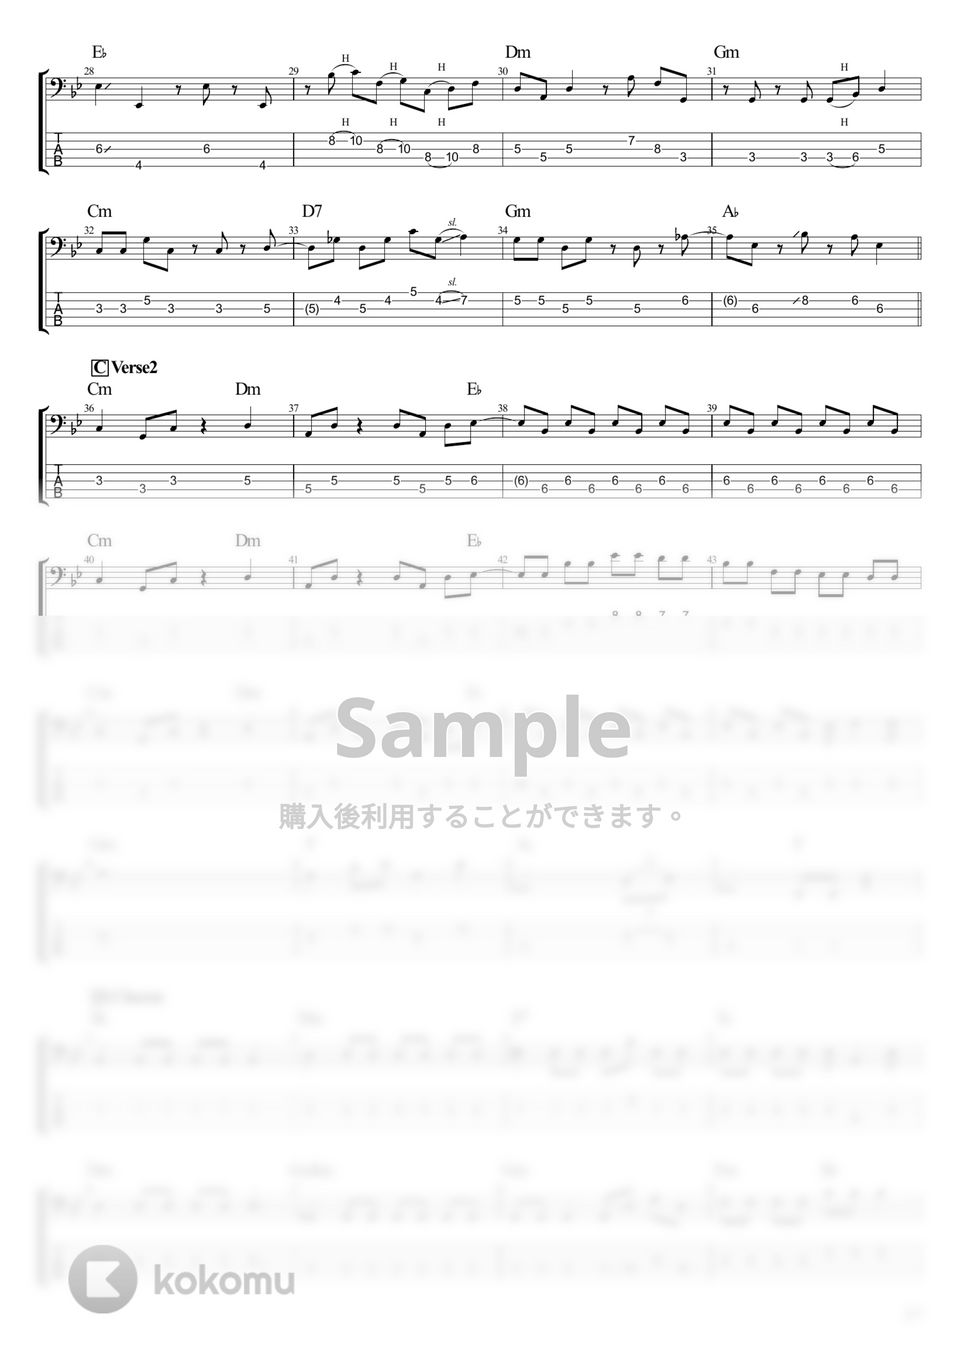 結束バンド - 光の中へ (ベース Tab譜 5弦) by T's bass score